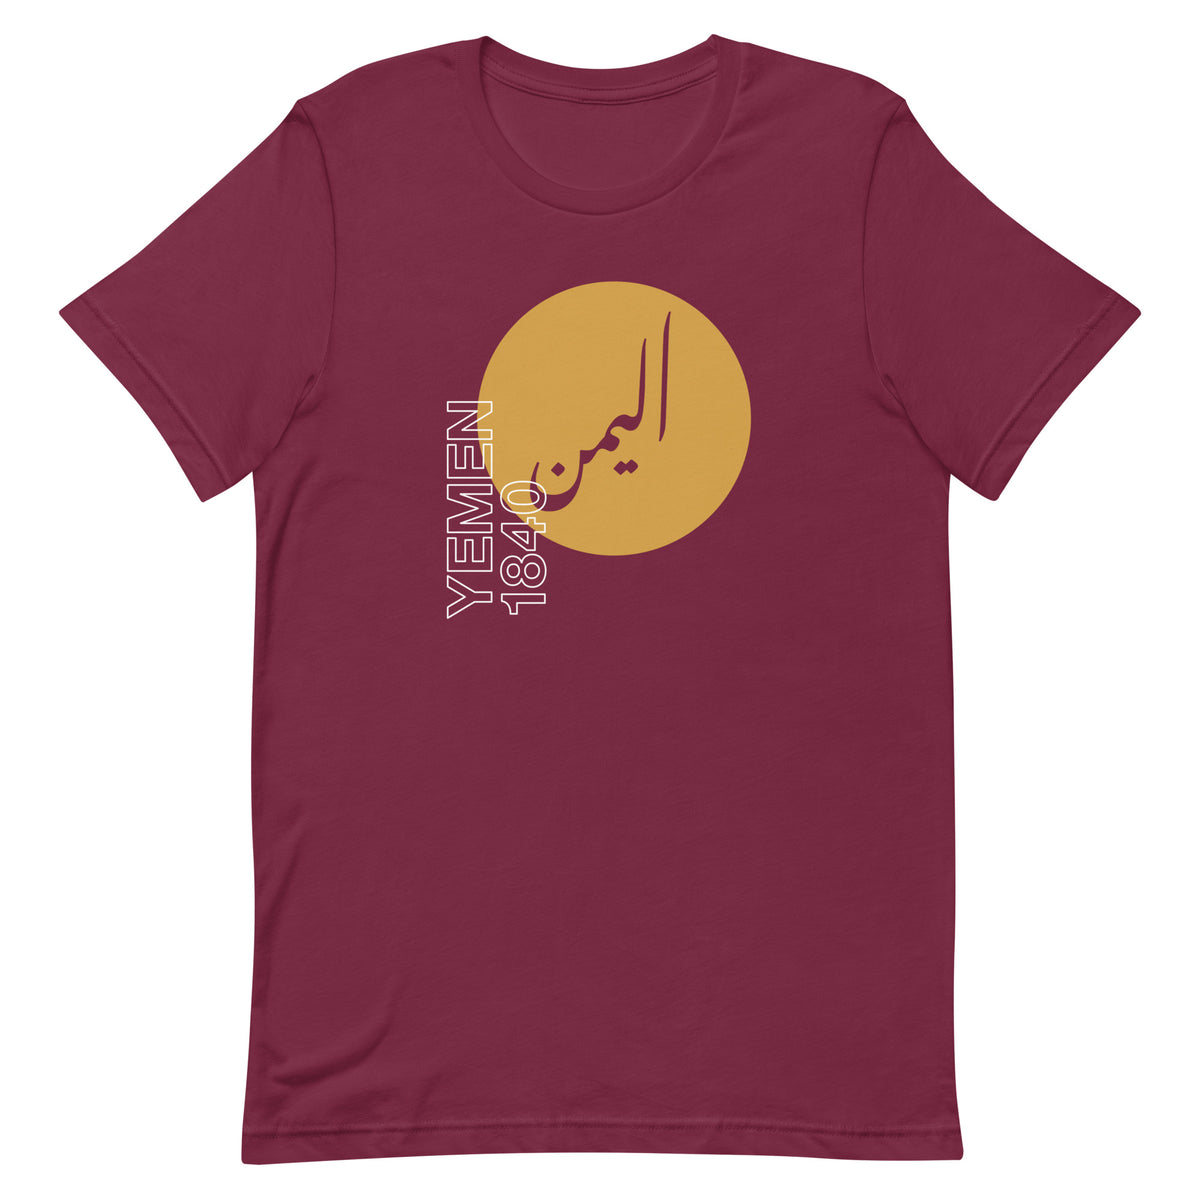 Yemen 1840 - T shirt